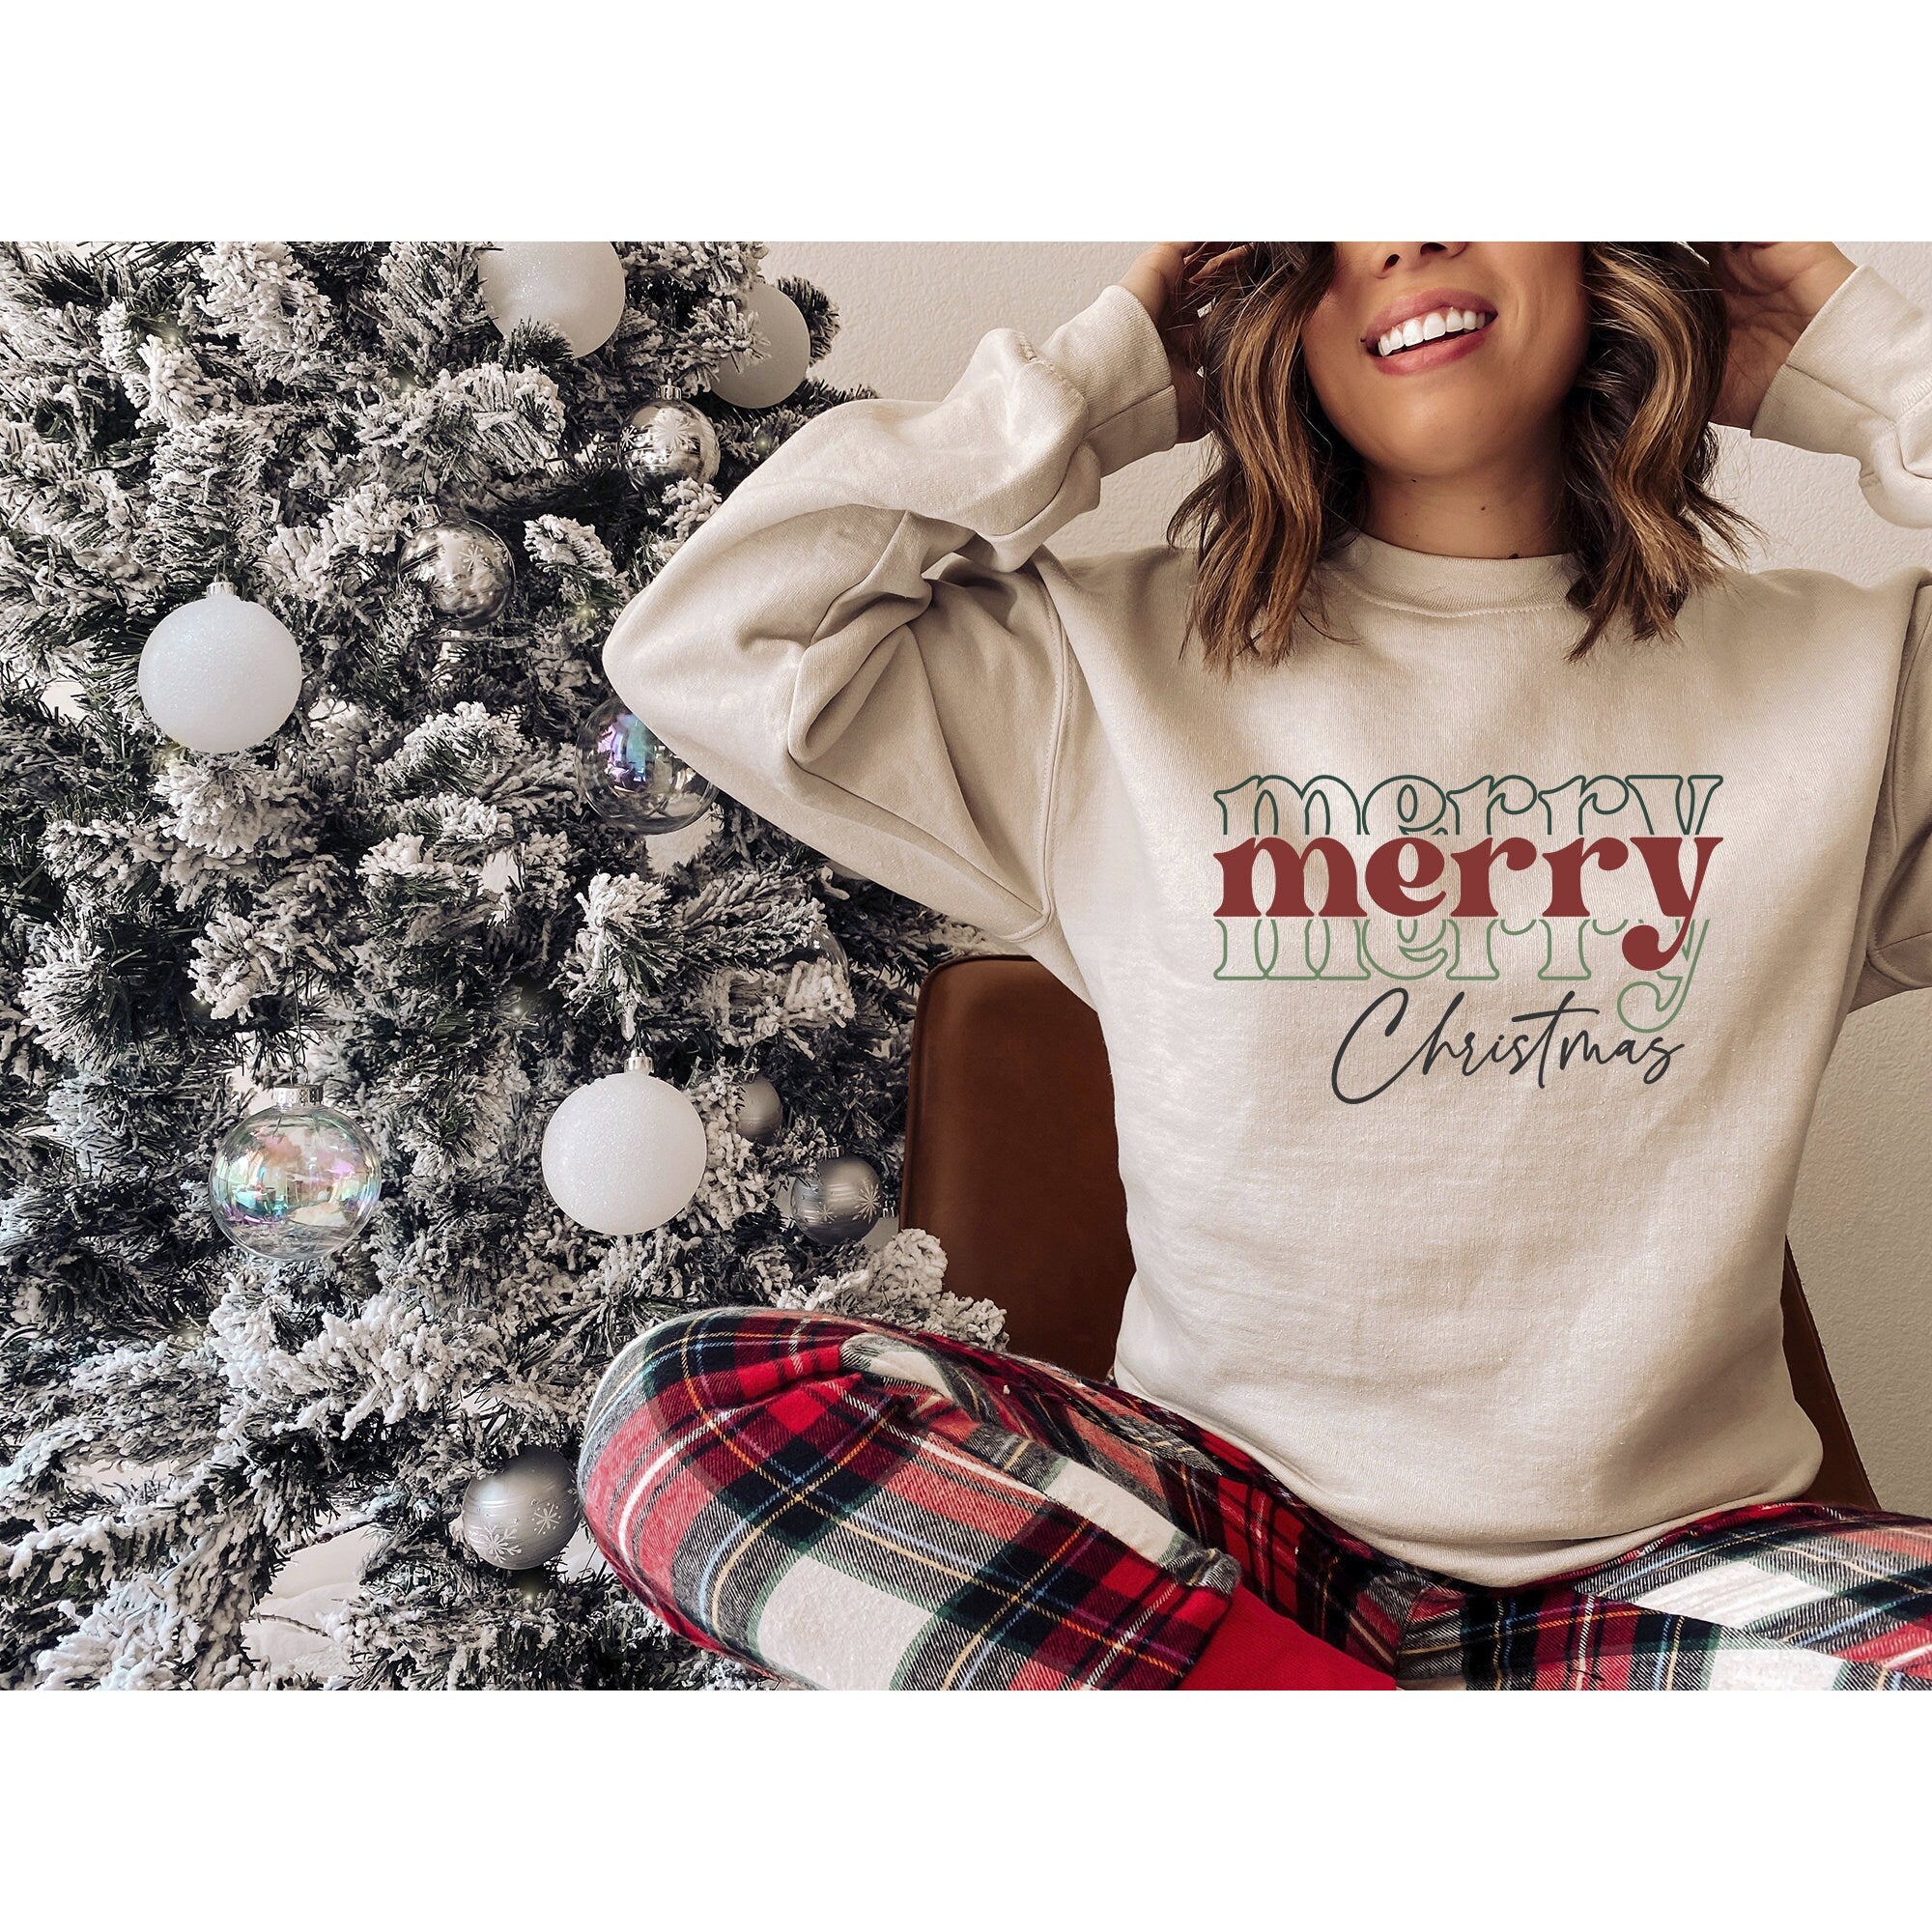 Merry Christmas Sweatshirt, Christmas Sweater, Merry Christmas Unisex Sweatshirt, Christmas Sweatshirt, Christmas Pajamas Unisex